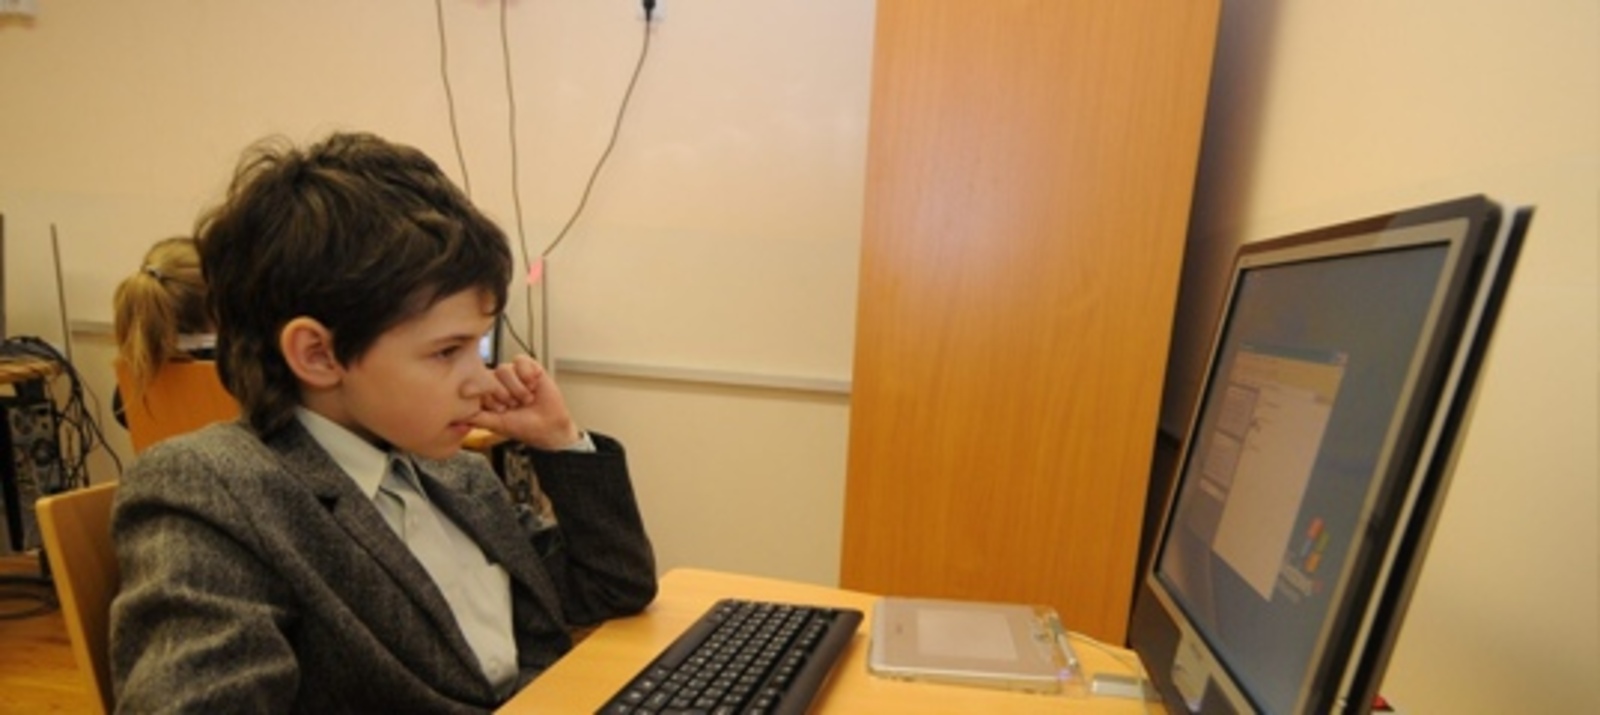 В Башкирии учеников бесплатно обучат языкам программирования